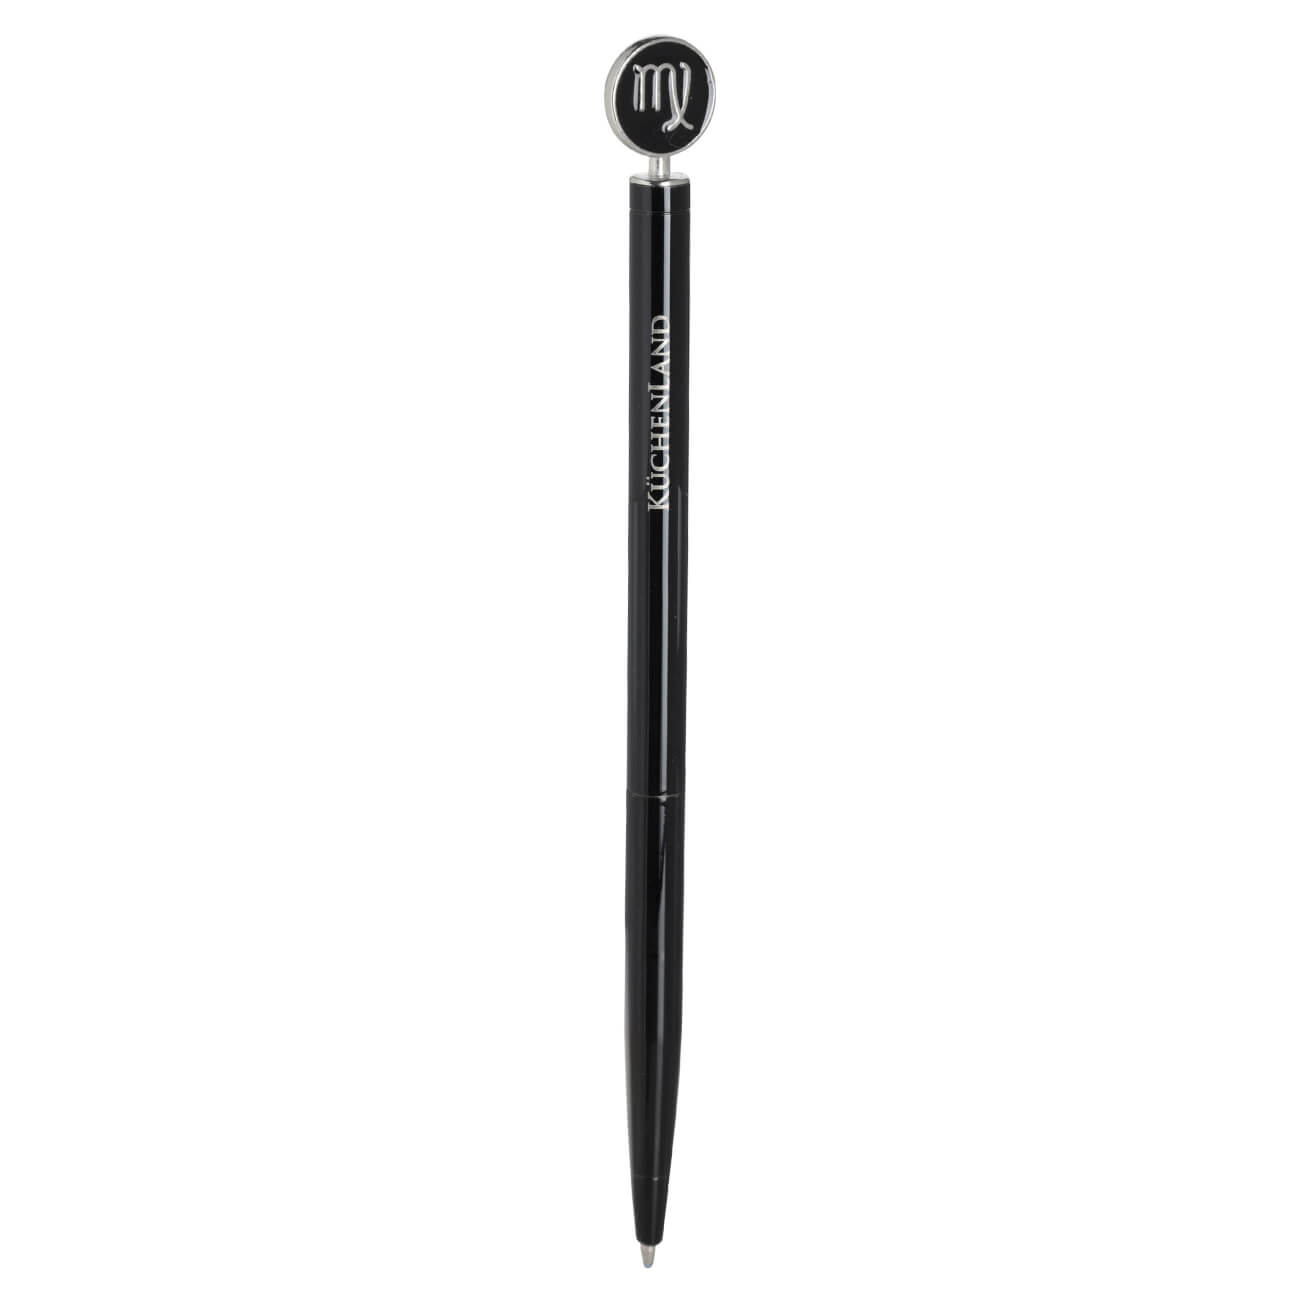 Ручка шариковая, 15 см, с фигуркой, сталь, черно-серебристая, Дева, Zodiac brass rollerball ручка